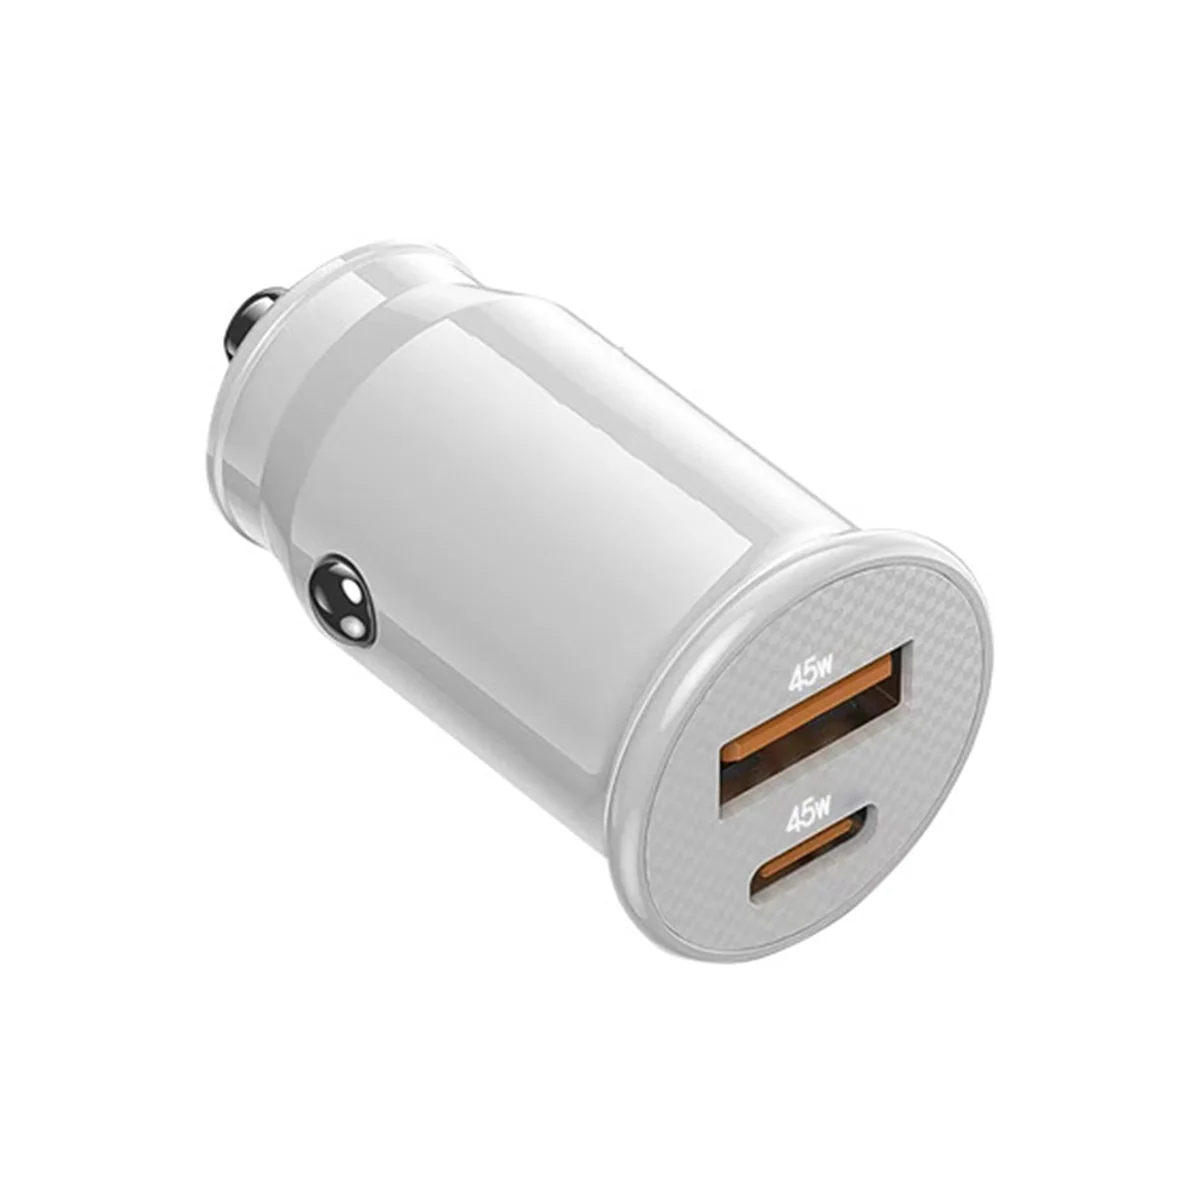 Mini USB Auto Lādētājs Ātri Uzlādēt USB C Automašīnas Lādētājs QC 4.0 45W 5A Tips PD Ātra Uzlādēšana Automašīnas Tālruņa Lādētāju(Spilgti Baltām)0